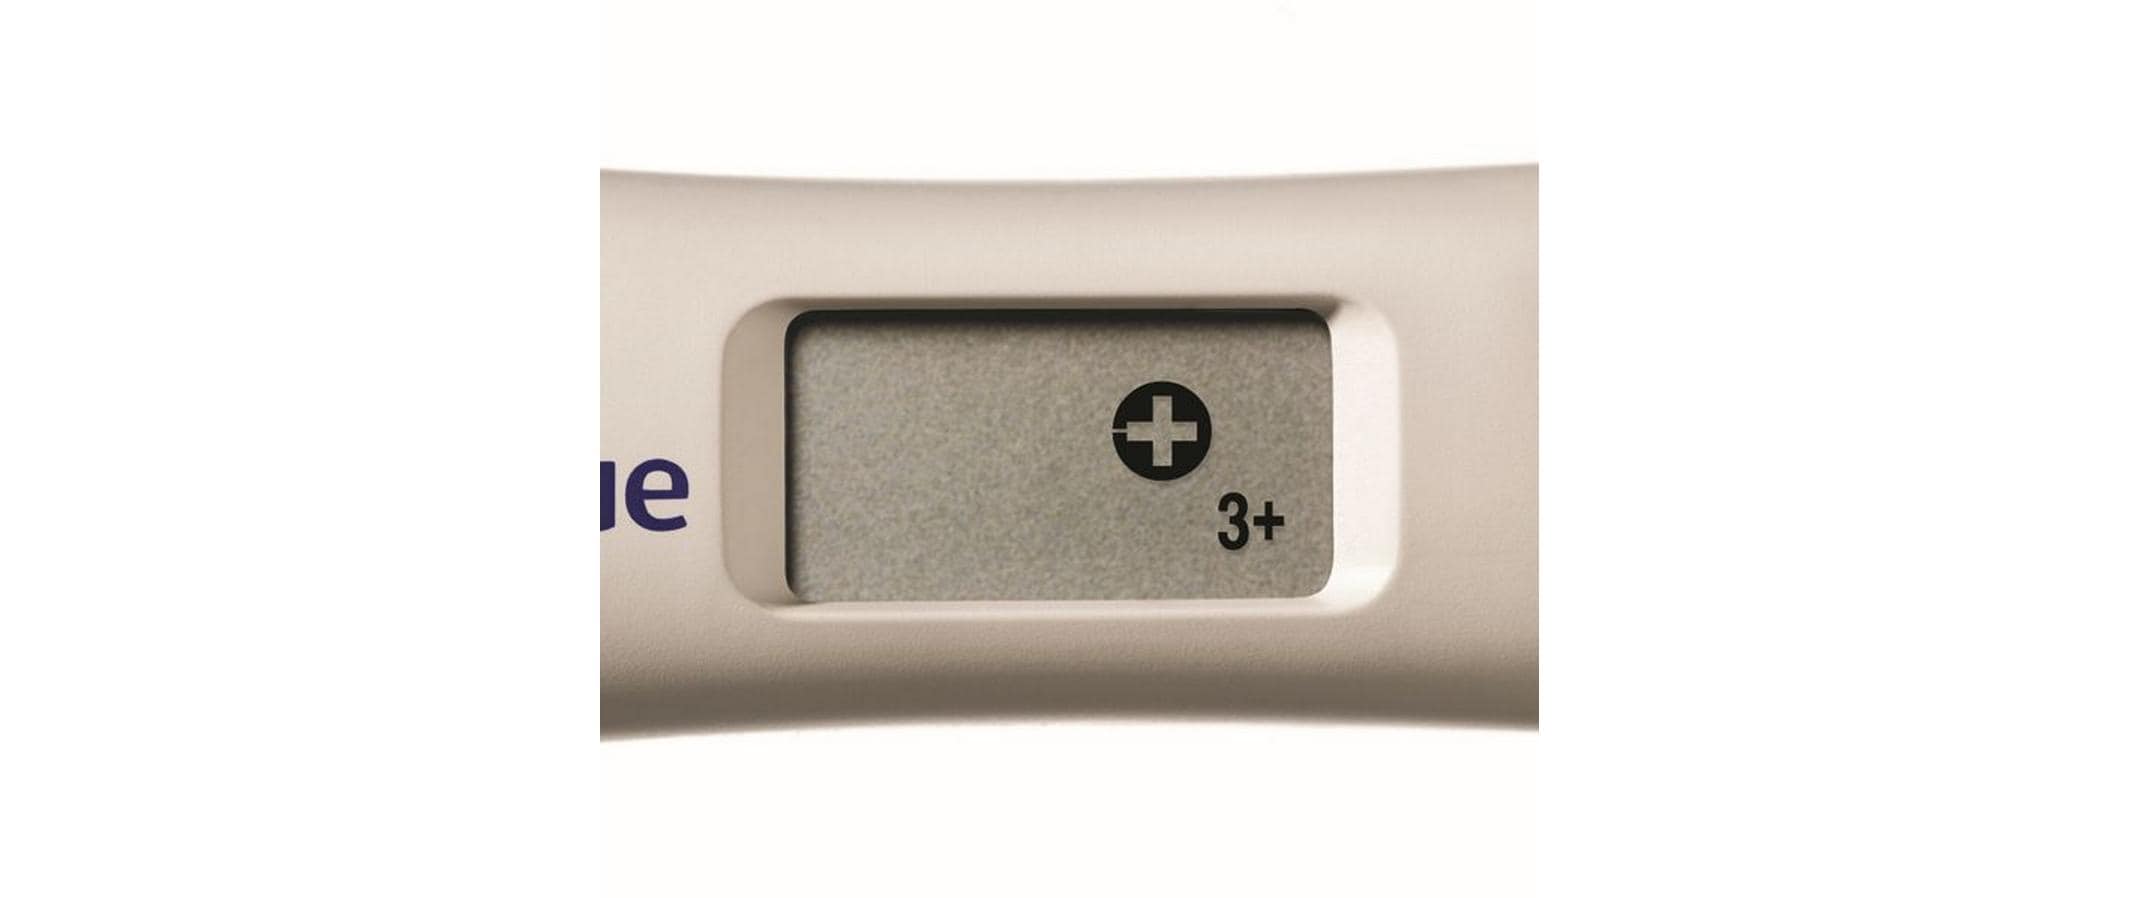 Clearblue Schwangerschaftstest mit Wochenbestimmung